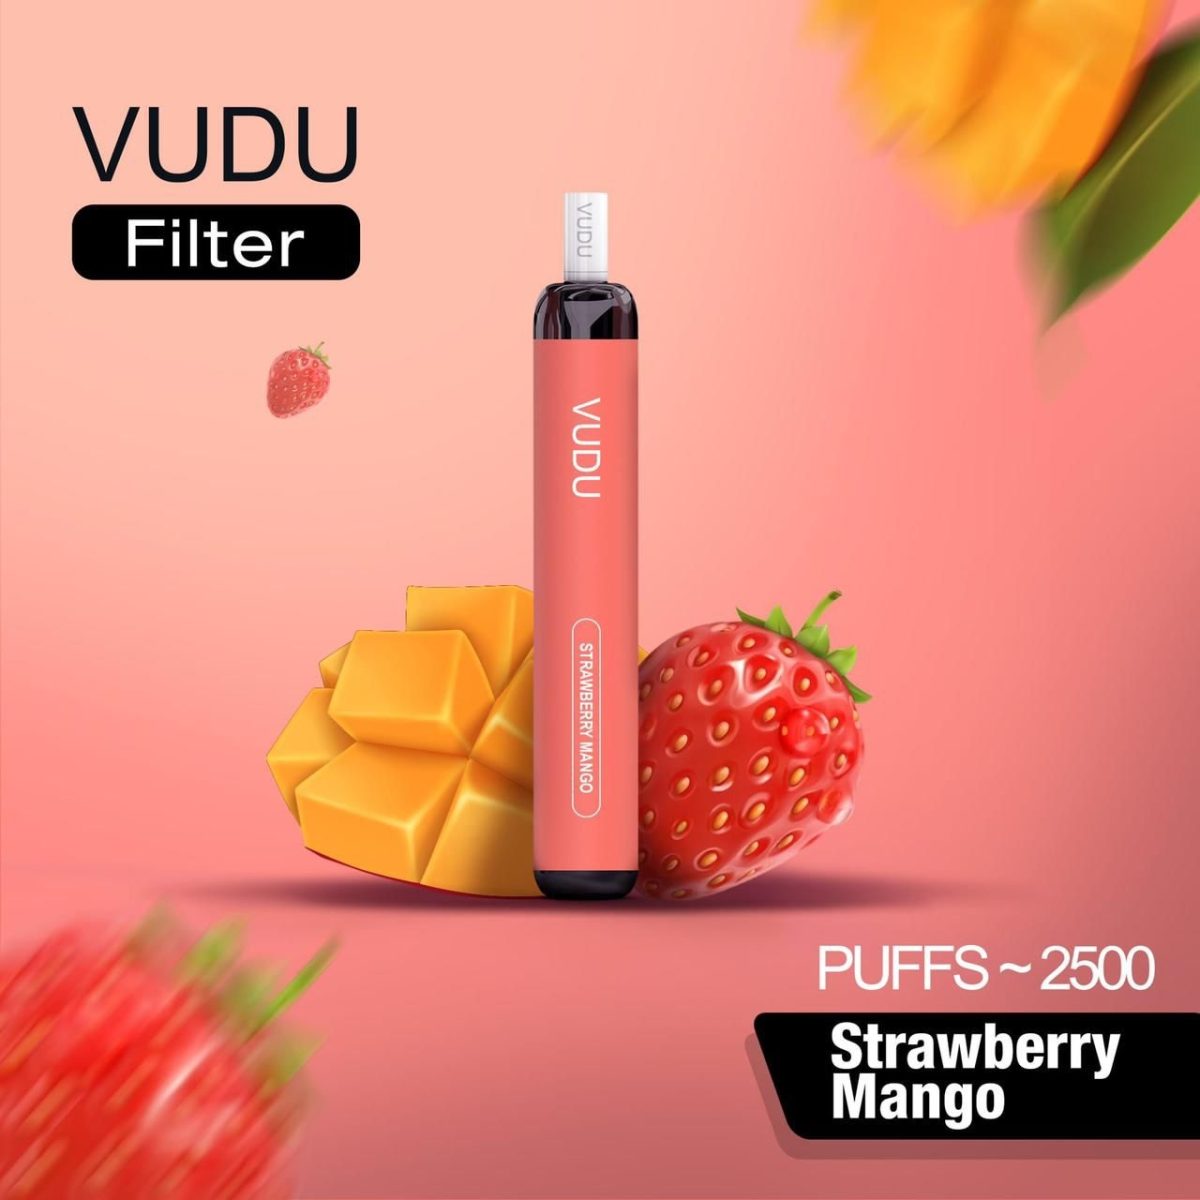 VUDU Filter Disposable 2500 Puffs- Strawberry Mango